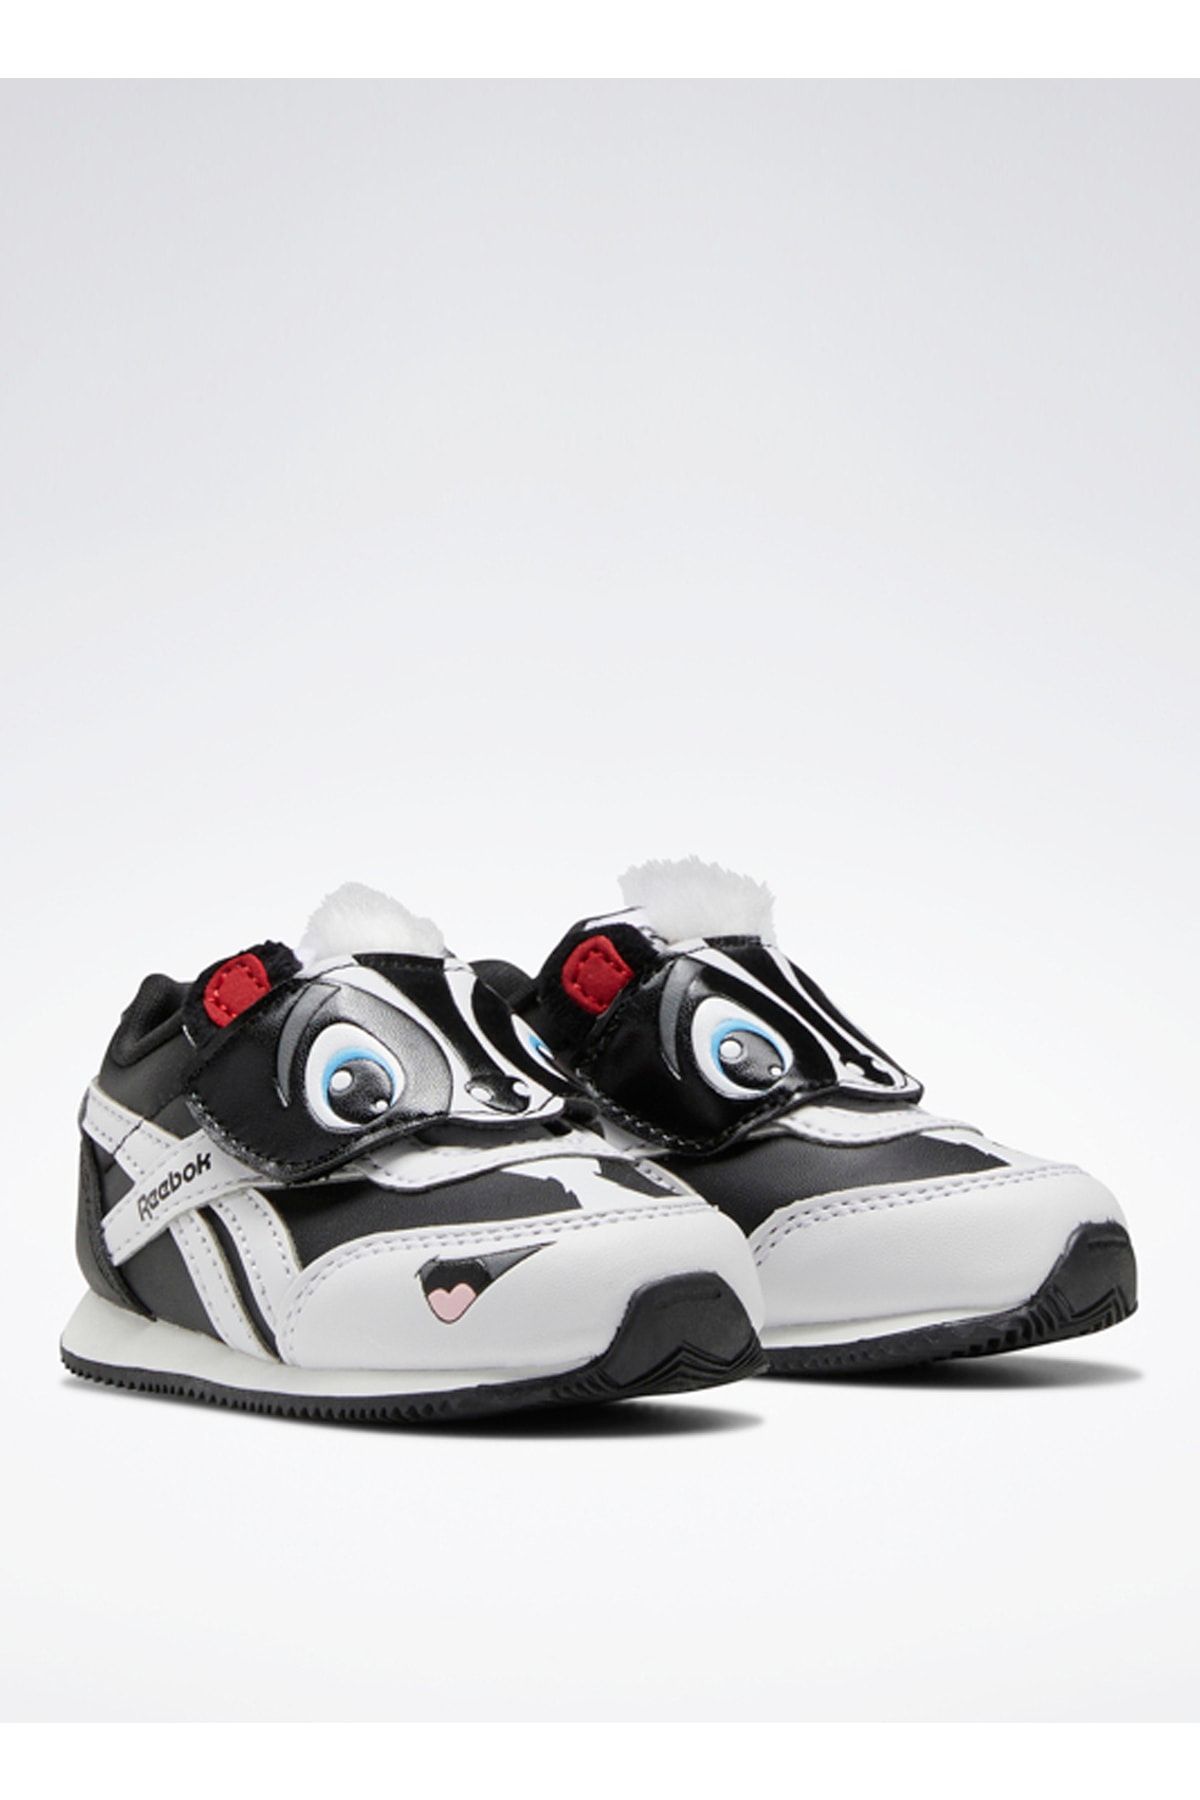 Reebok Siyah Bebek Yürüyüş Ayakkabısı Gw3766 Royal Cljog 2.0 Kc